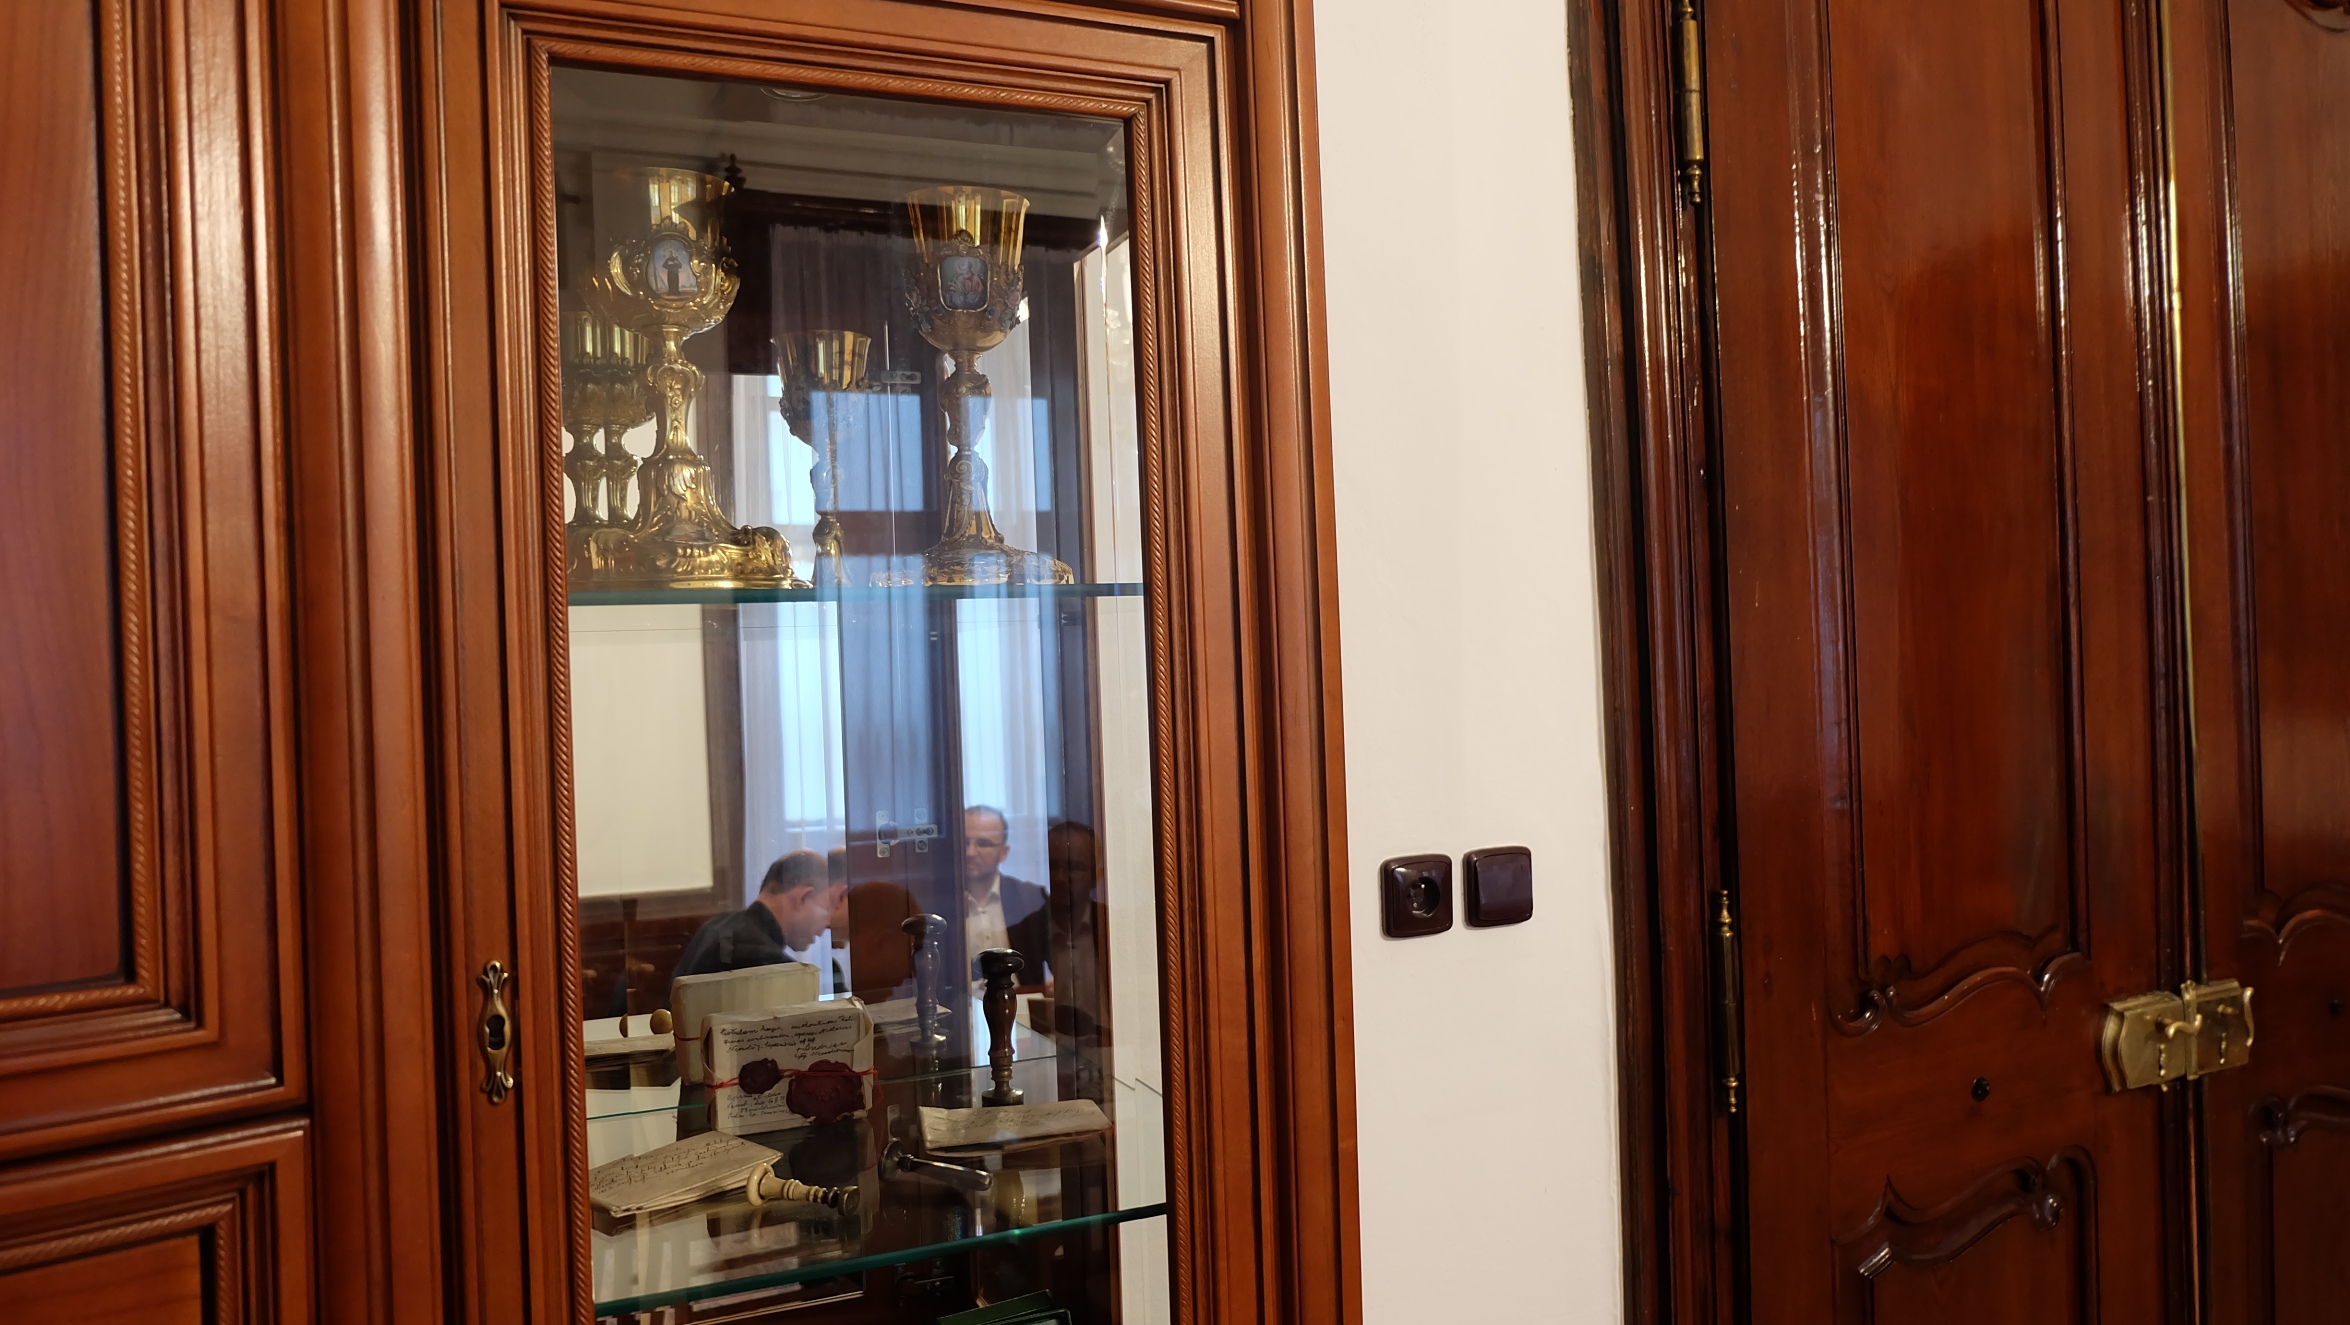 Rozhovor s otcom biskupom Chovancom v zrkadlení v miestnostiach biskupského úradu v Banskej Bystrici